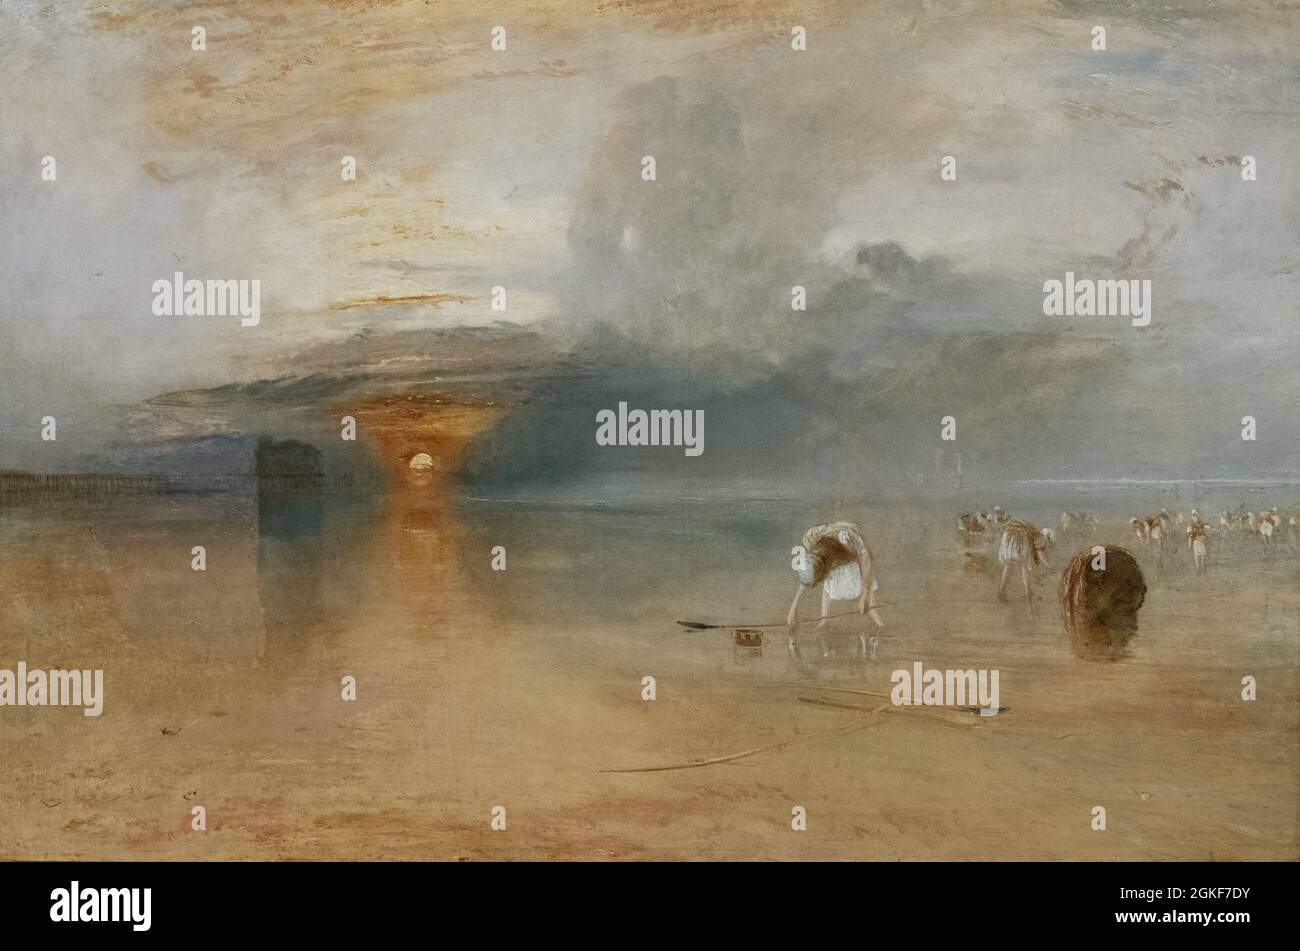 JMW Turner peinture; sable de Calais à basse eau - Poissards collecte appât; 1830, huile sur toile; période romantique Banque D'Images